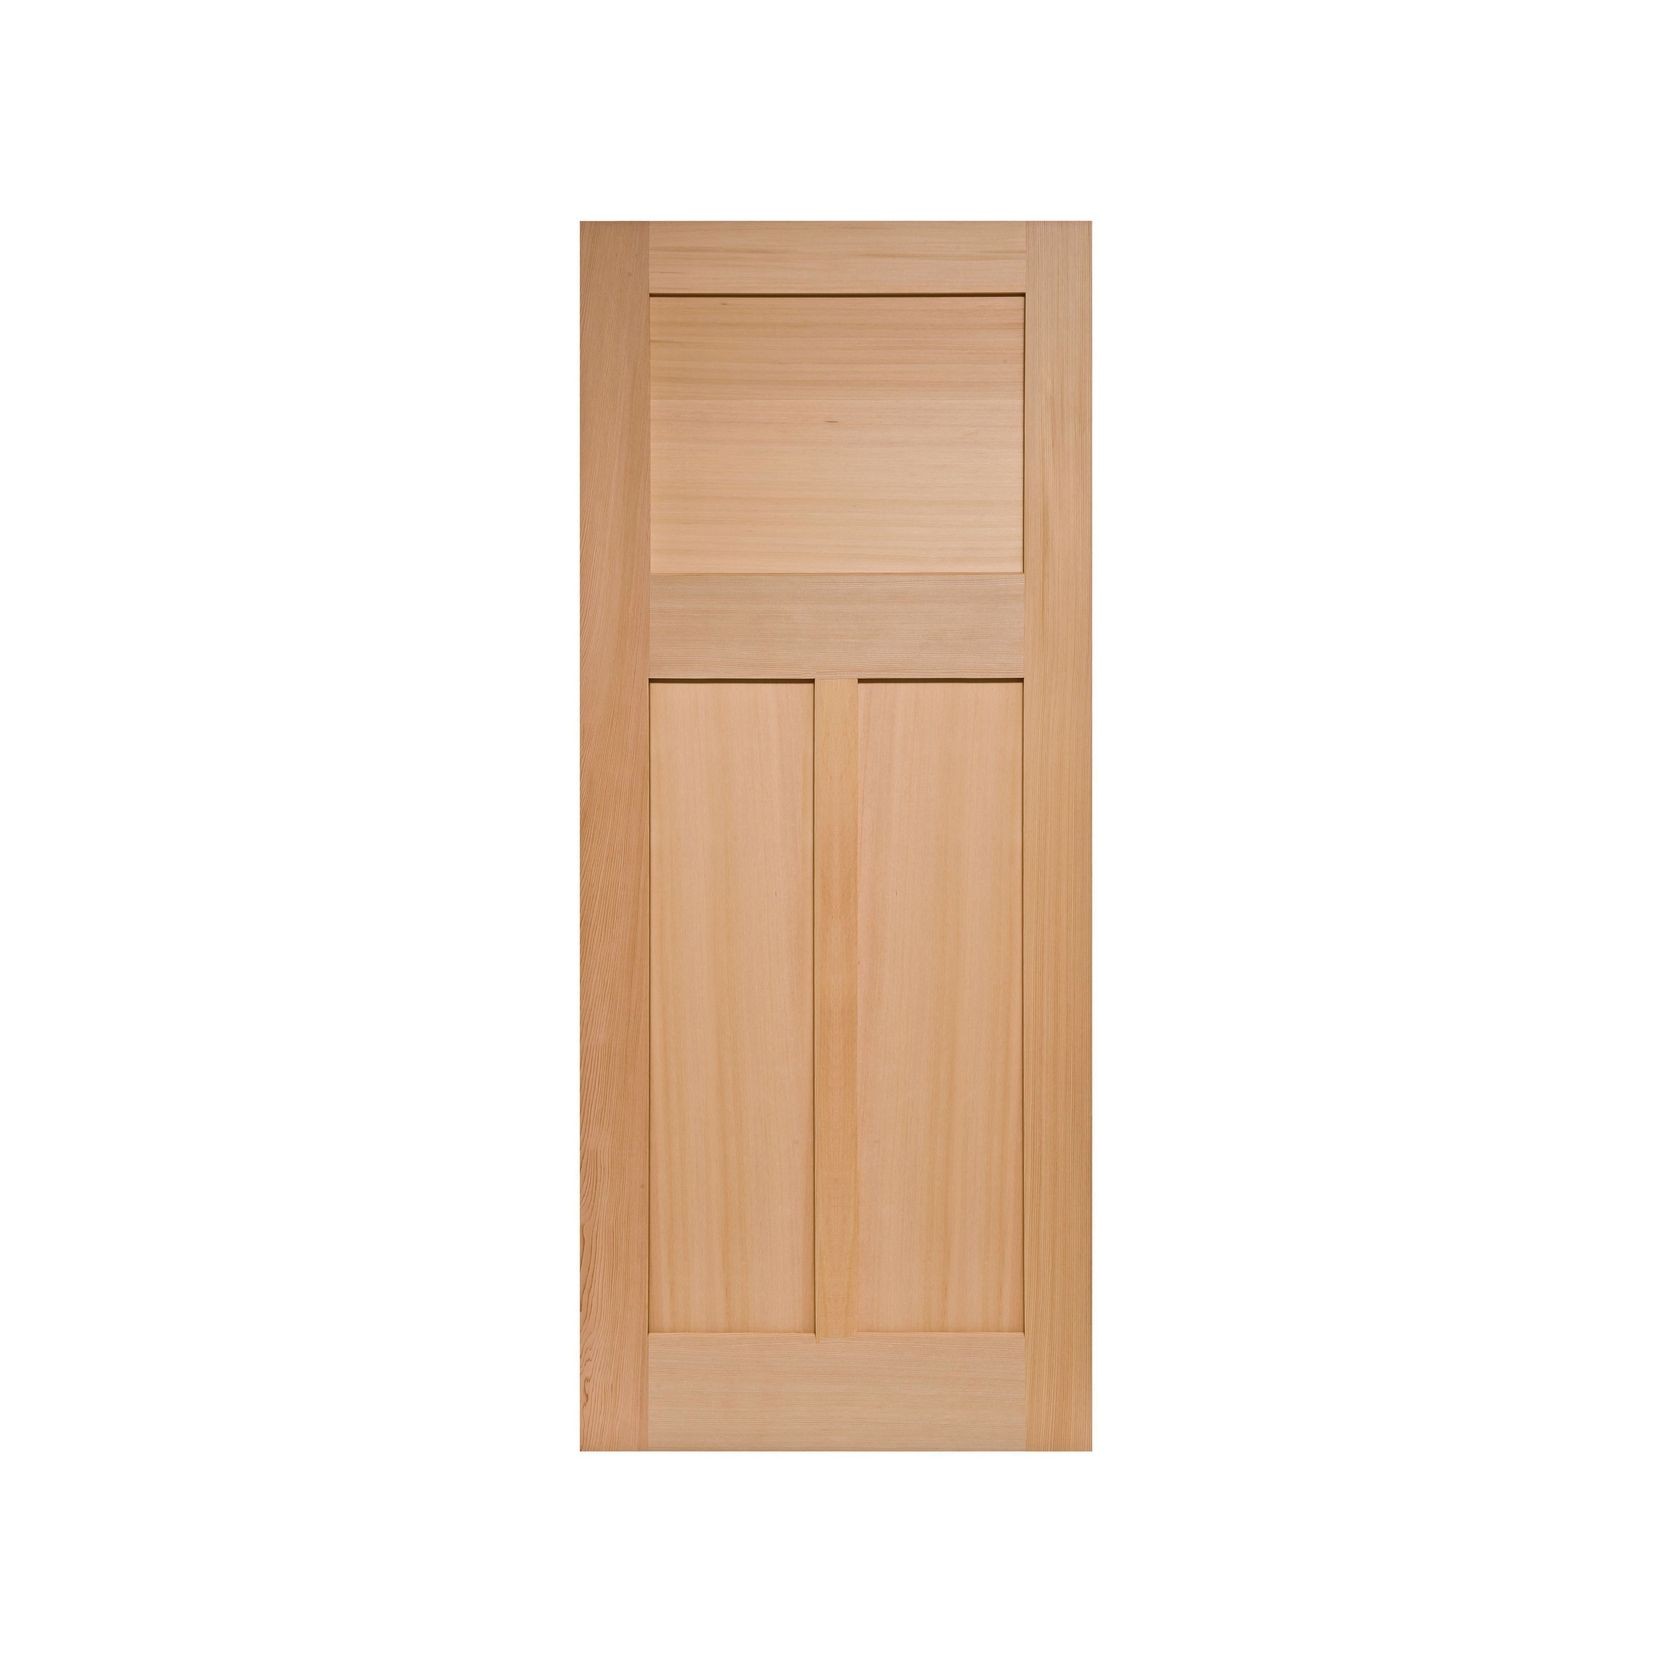 Bungalow 3 Solid Wood Door gallery detail image